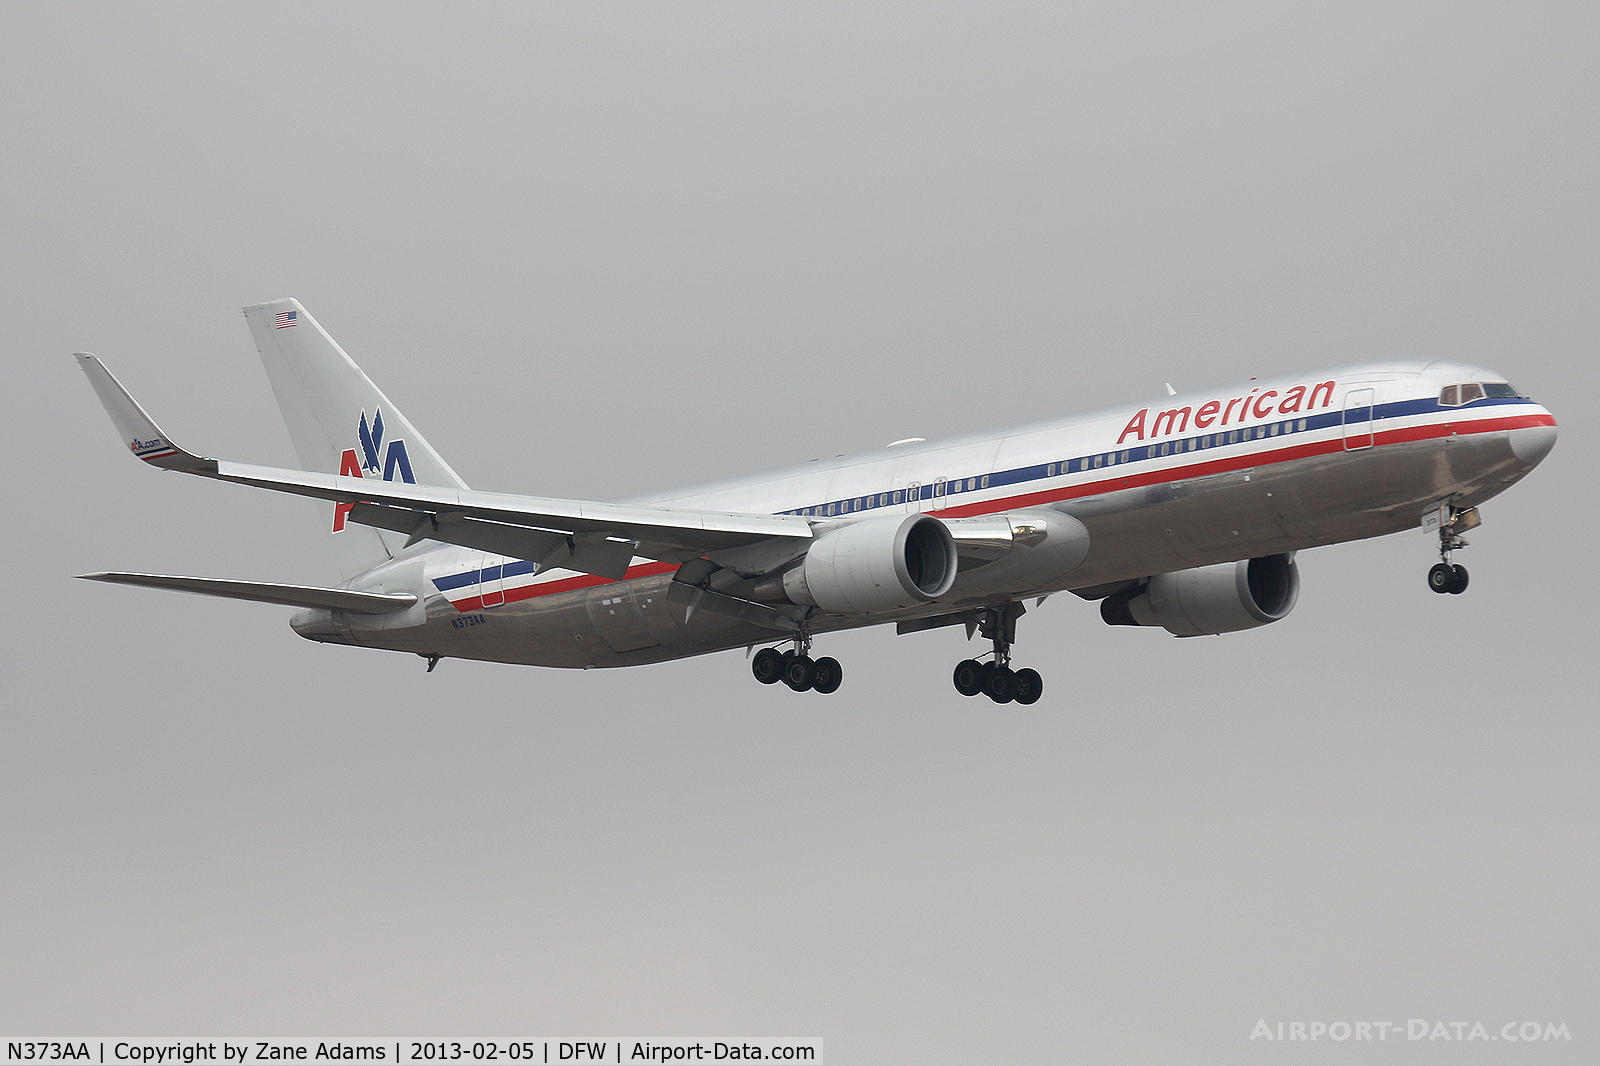 N373AA, 1992 Boeing 767-323 C/N 25200, American Airlines at DFW Airport